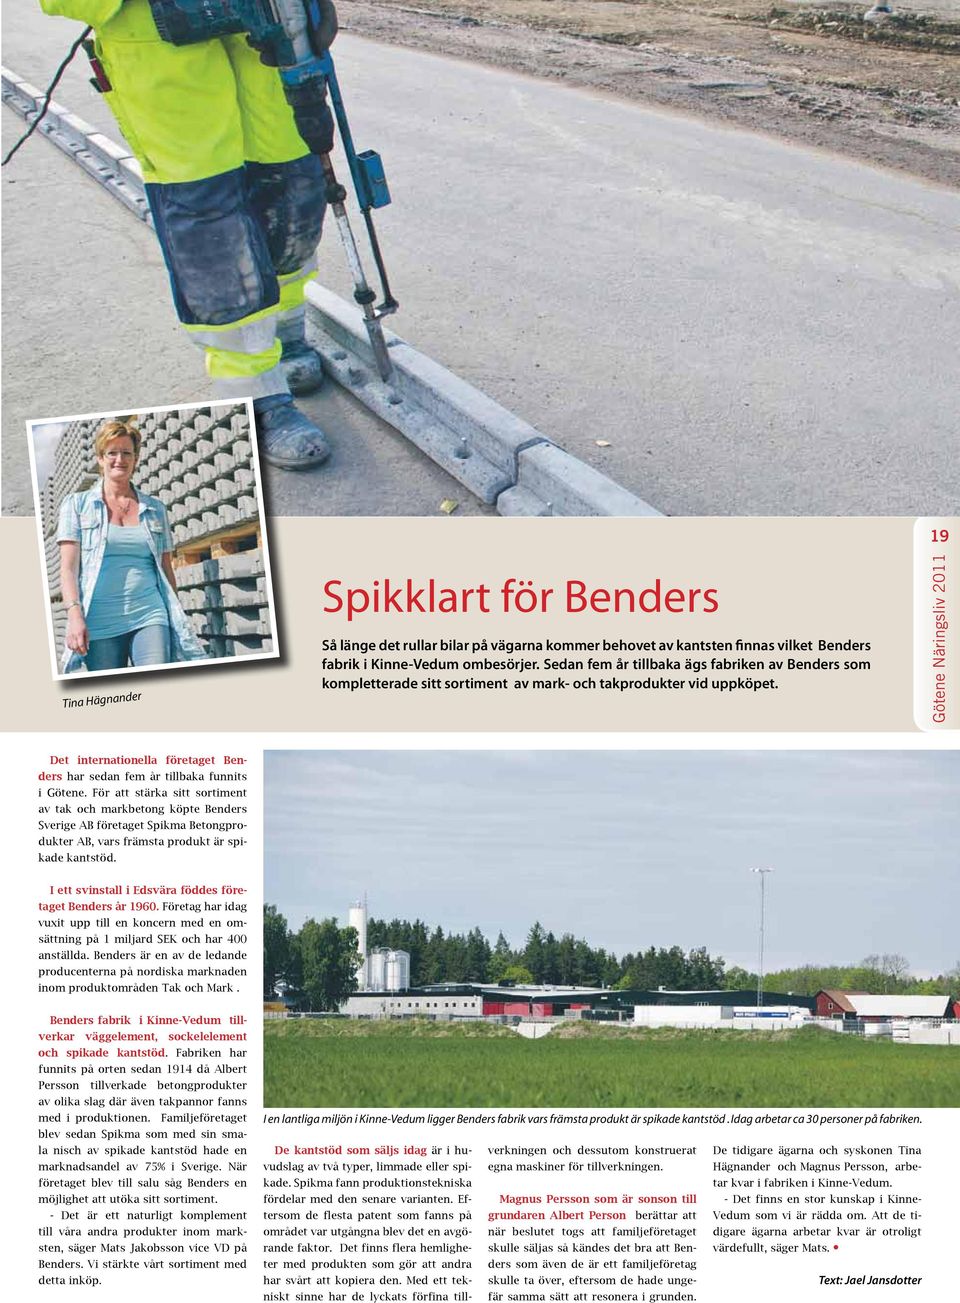 För att stärka sitt sortiment av tak och markbetong köpte Benders Sverige AB företaget Spikma Betongprodukter AB, vars främsta produkt är spikade kantstöd.